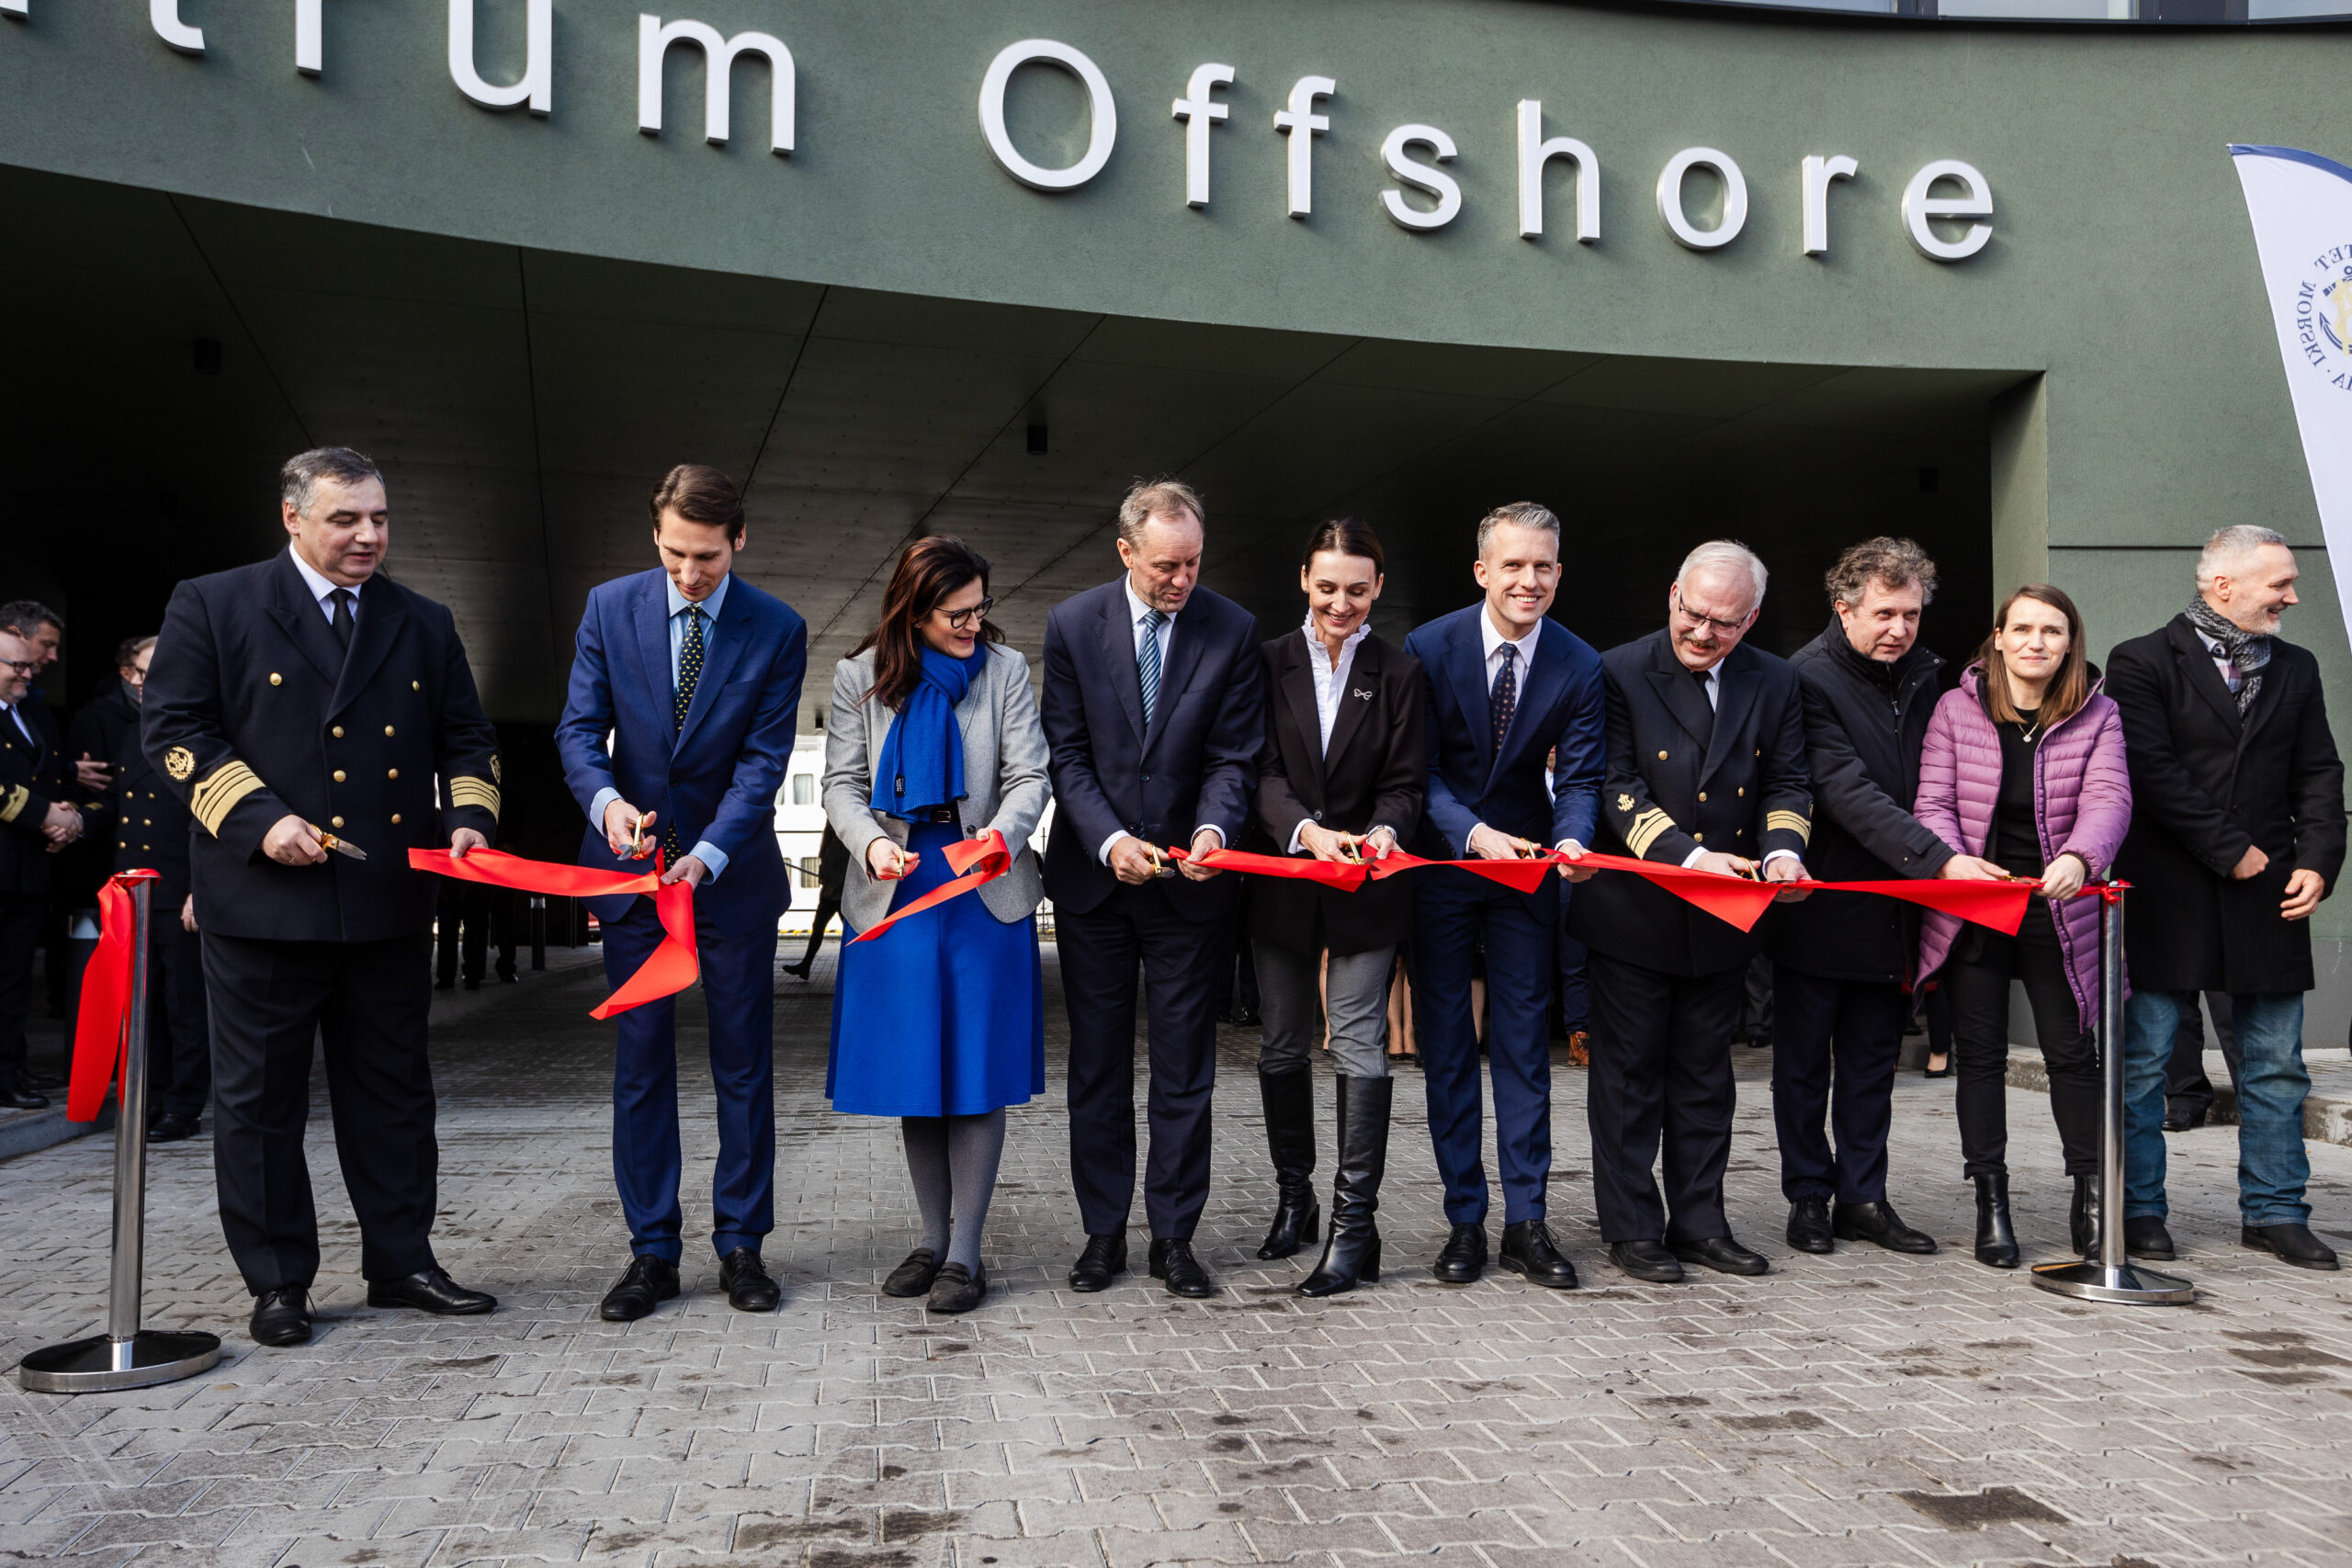 Wielkie otwarcie Centrum Offshore. Nowoczesna placówka będzie wspierać rozwój energetyki wiatrowej